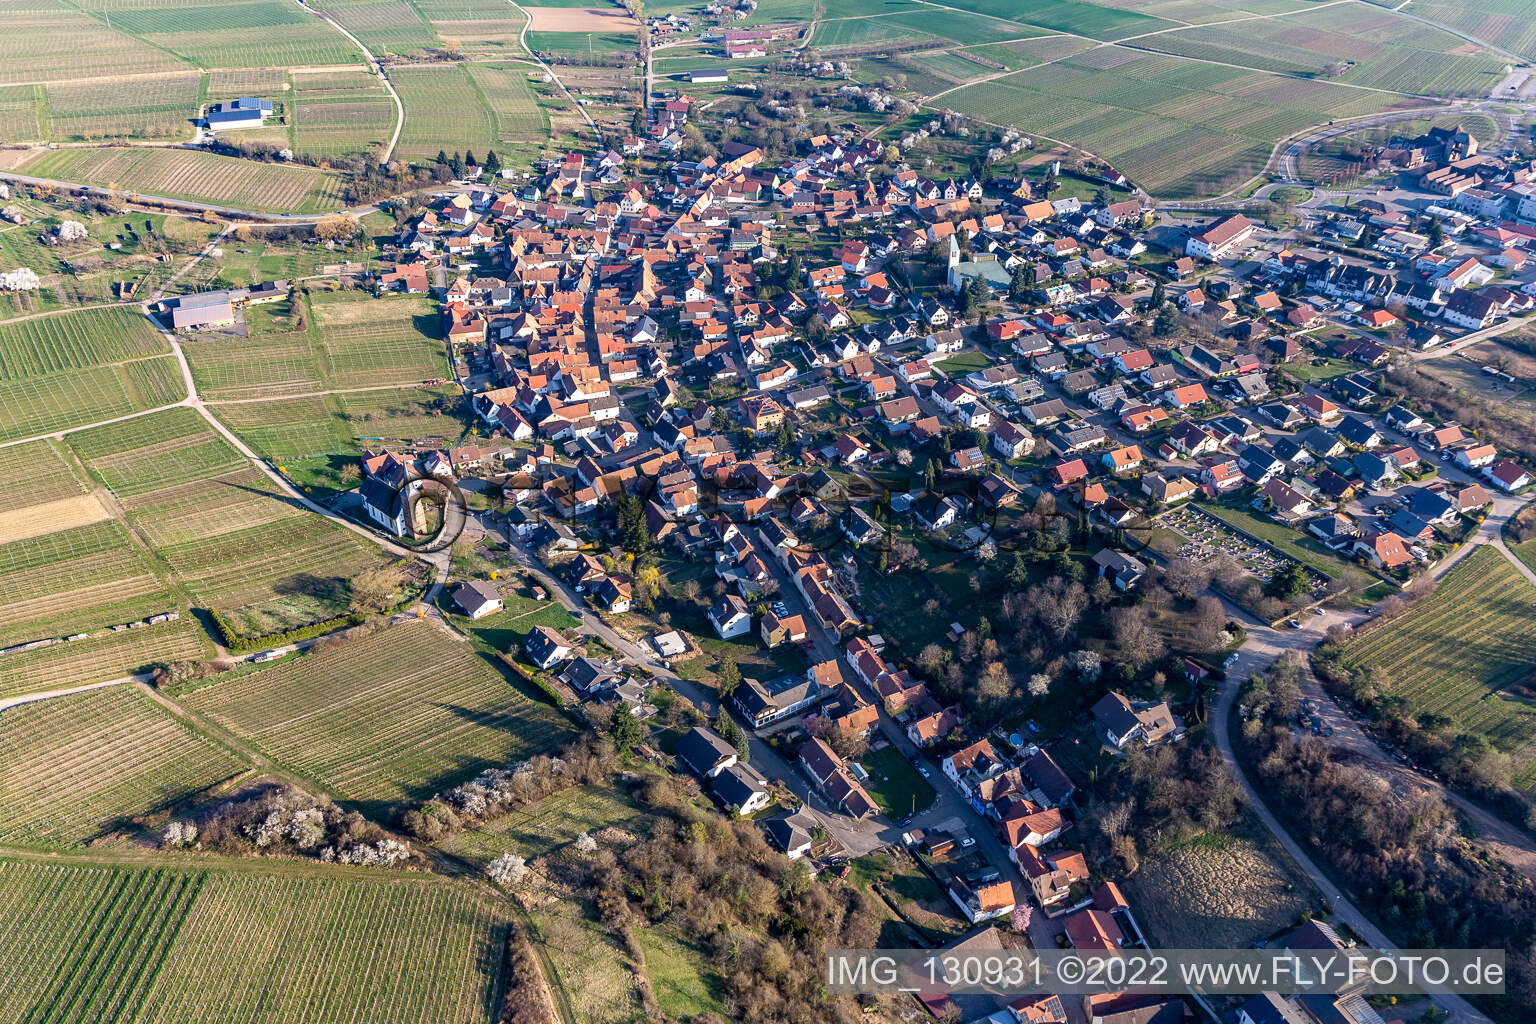 Quartier Rechtenbach in Schweigen-Rechtenbach dans le département Rhénanie-Palatinat, Allemagne du point de vue du drone